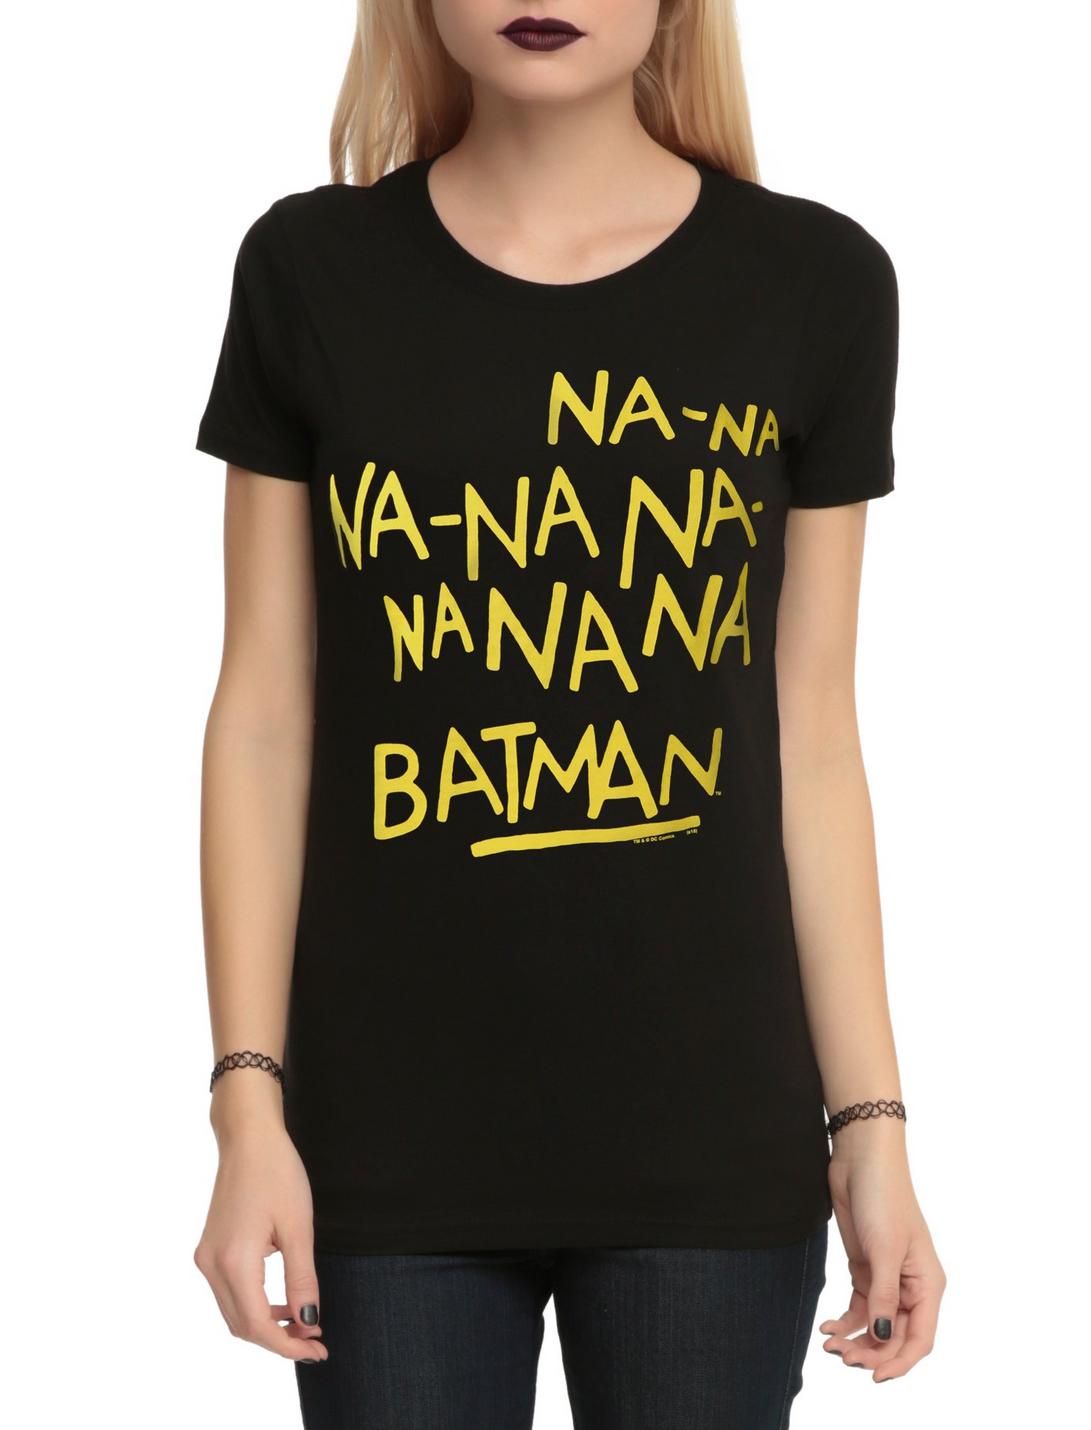 Nana Nana Batman hoodie 